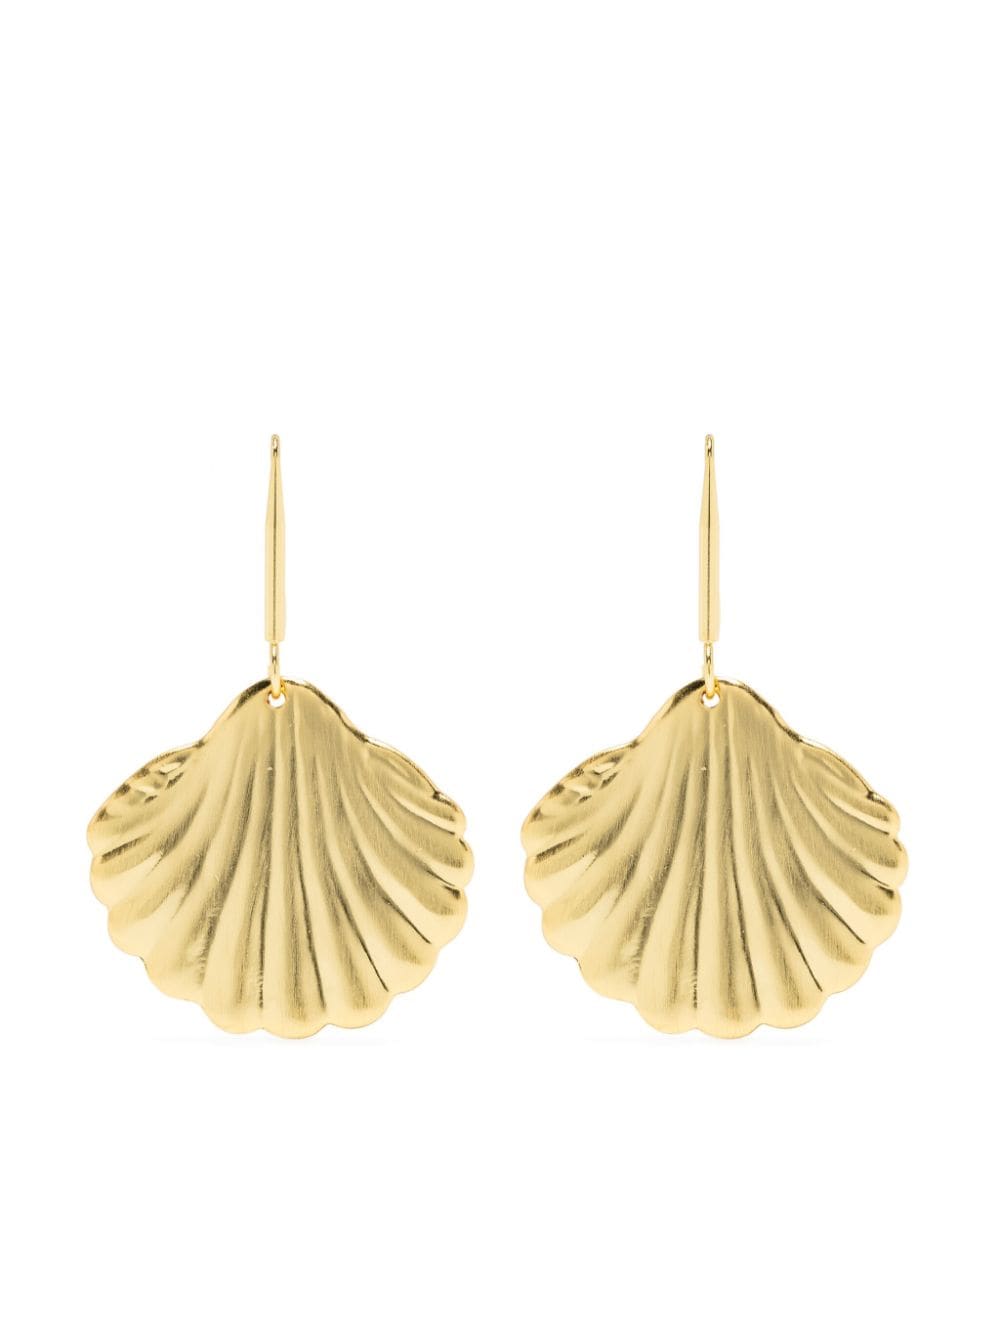 shell drop earrings